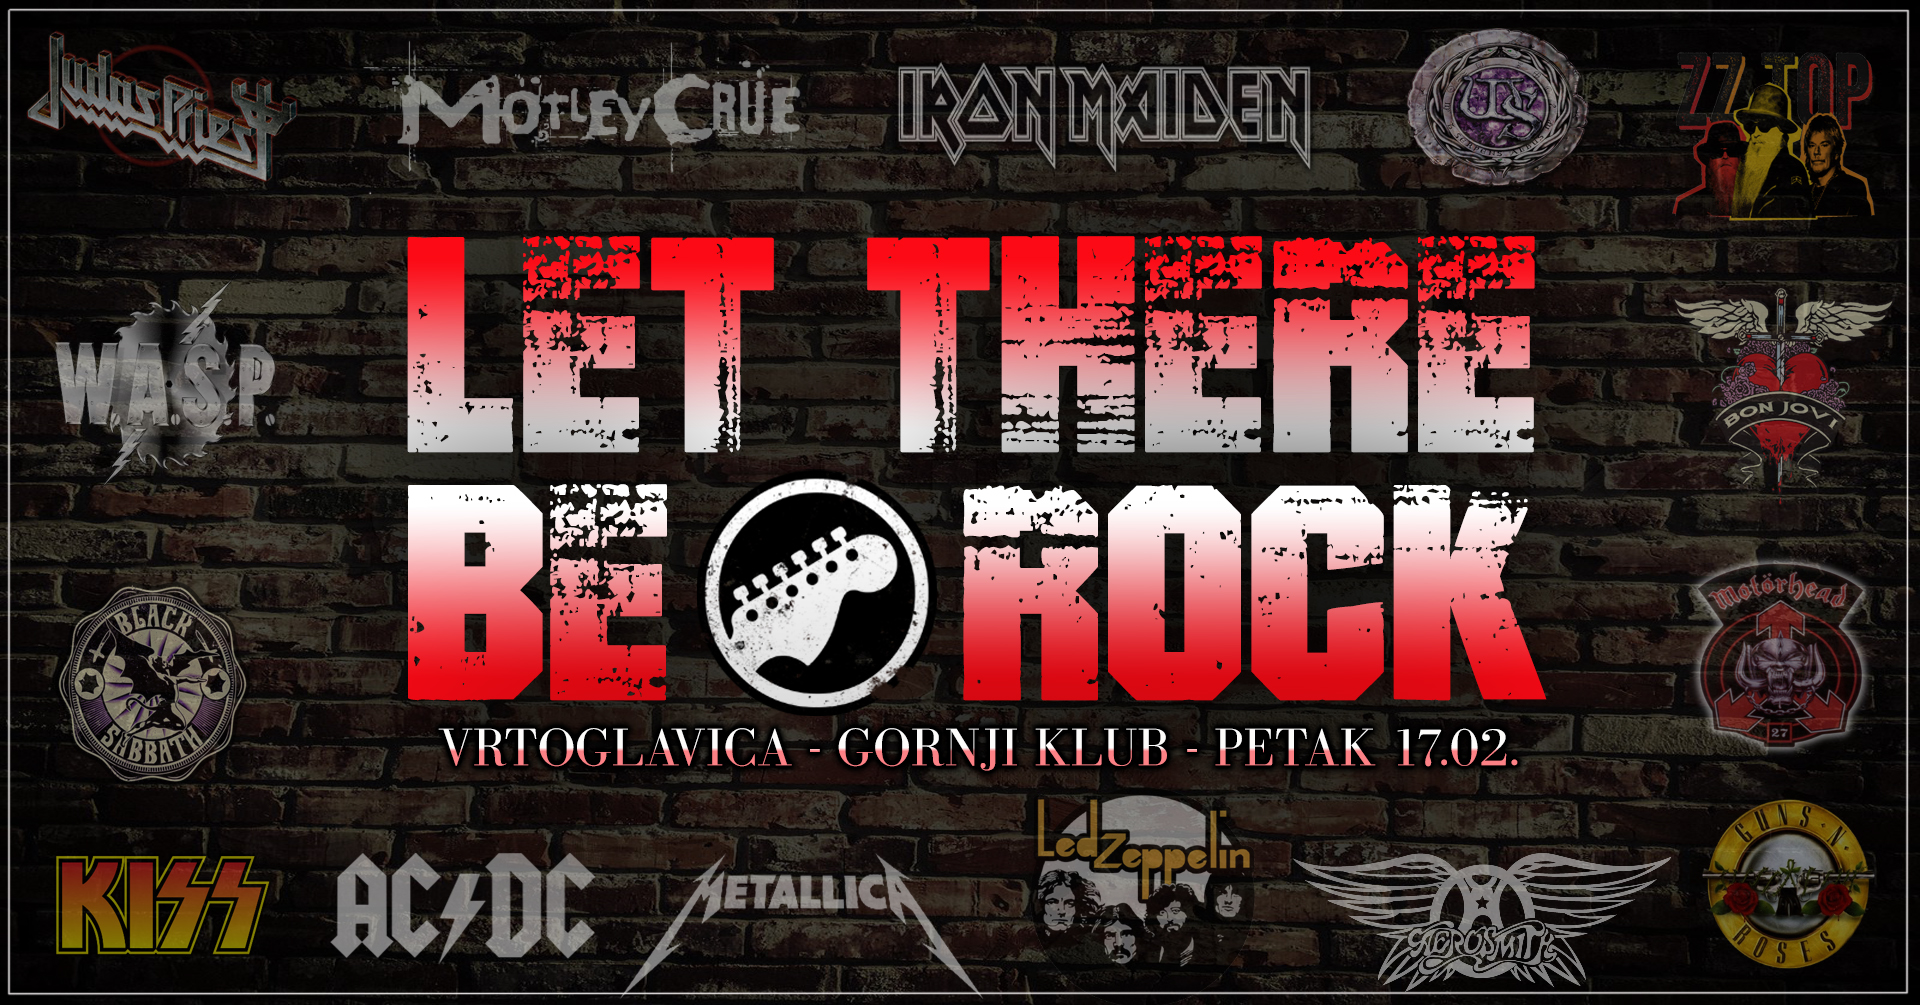 Let There Be Rock17.02.2023. Vrtoglavica, Gornji klub